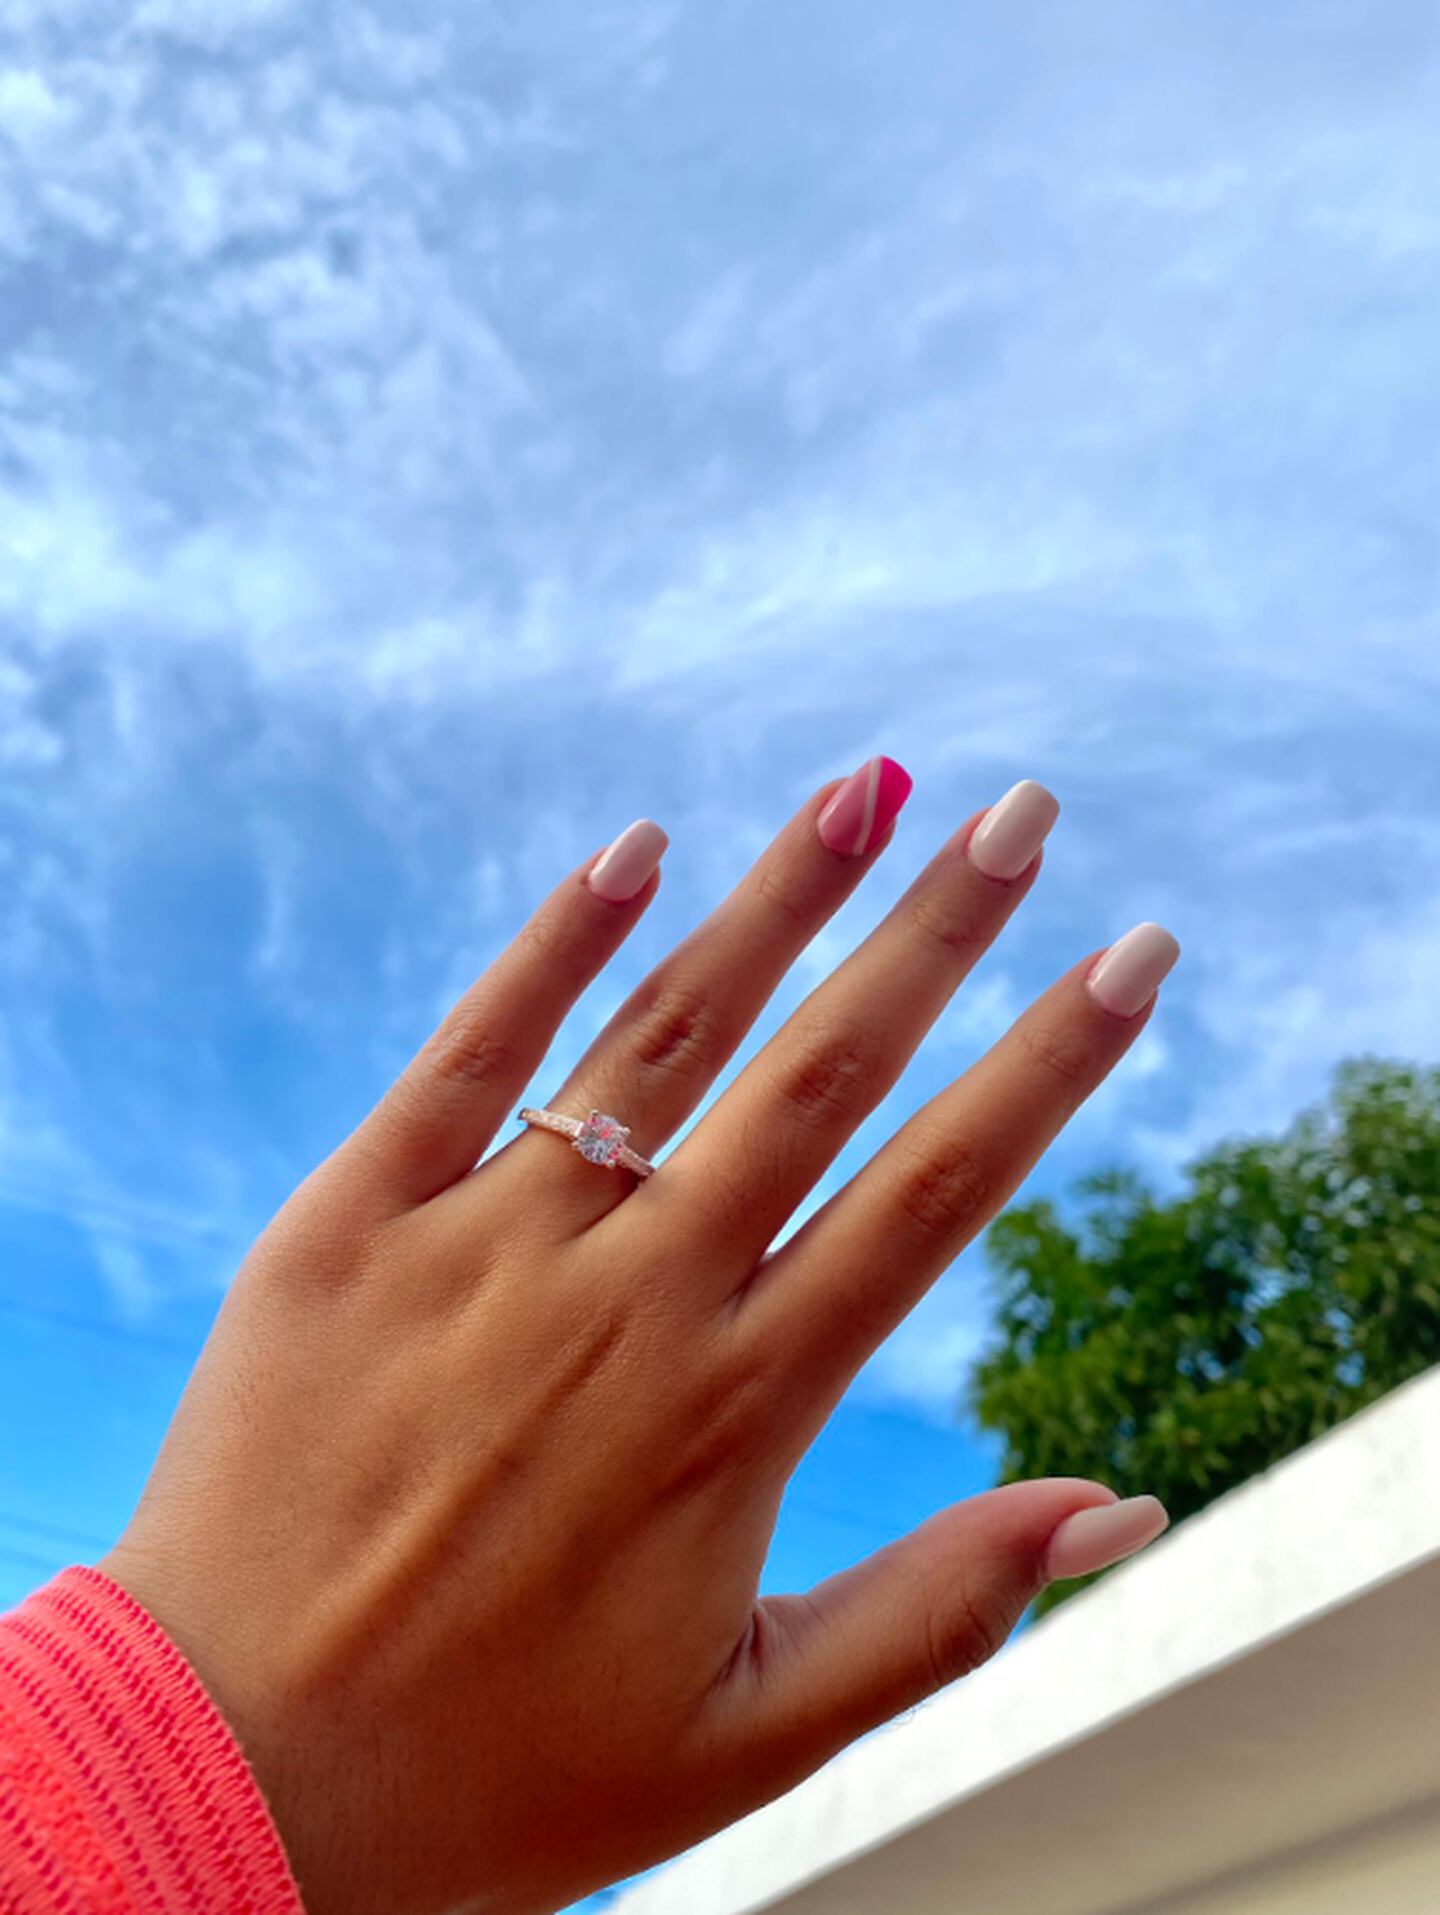 Samantha recibió el anillo de compromiso que su novio fallecido le había prometido